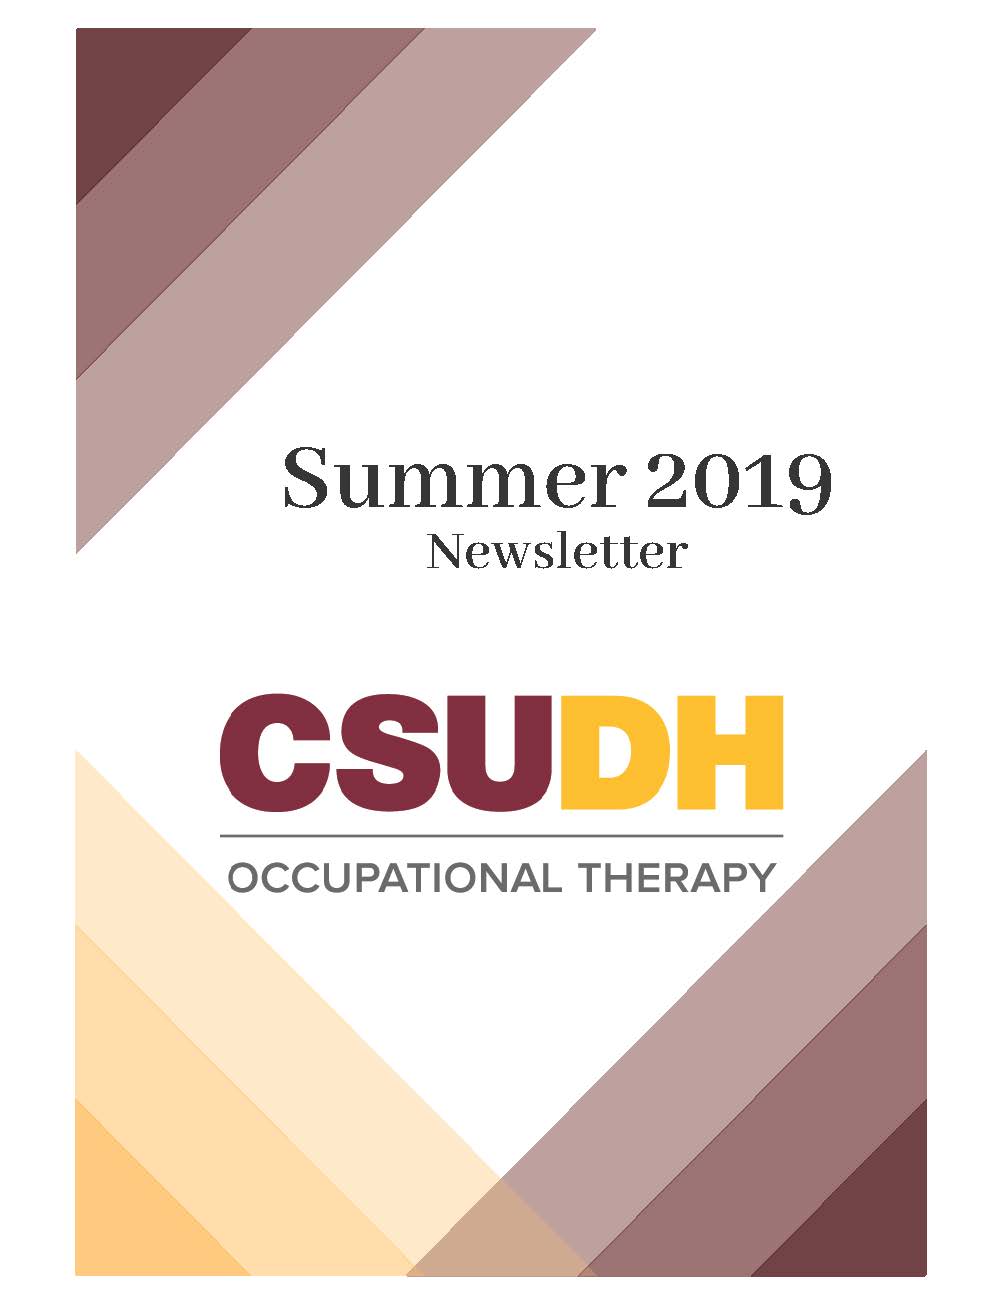 Summer 2019 Newsletter cover